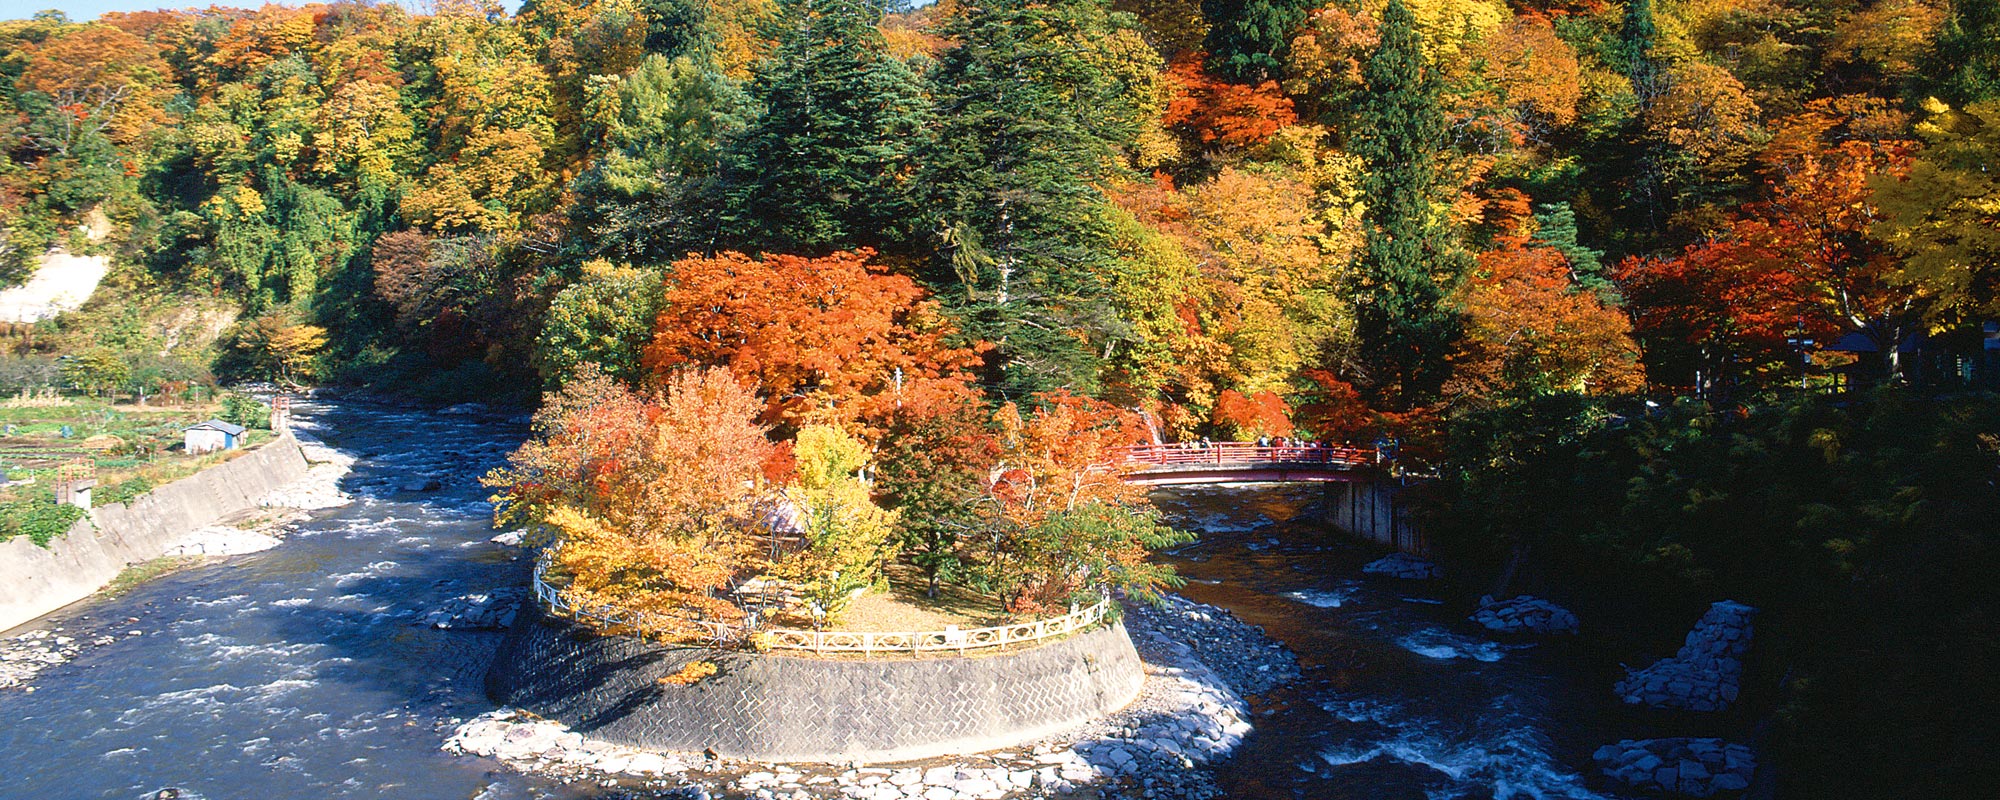 Nakano Maple Mountain Autumn Foliage and Night Illumination